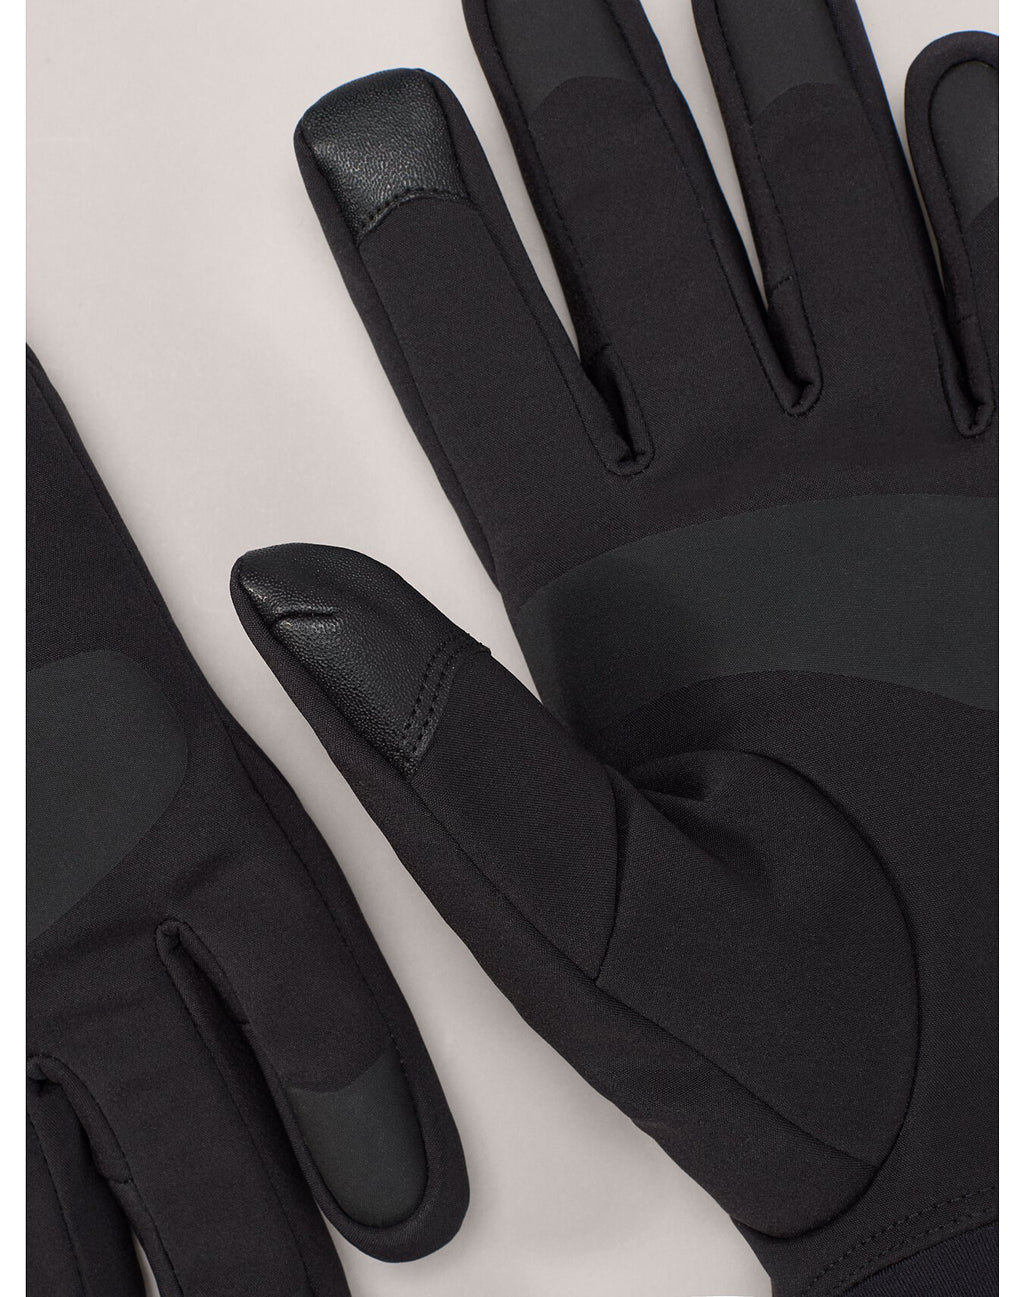 ARC'TERYX ベンタグローブ(Lサイズ) - 手袋